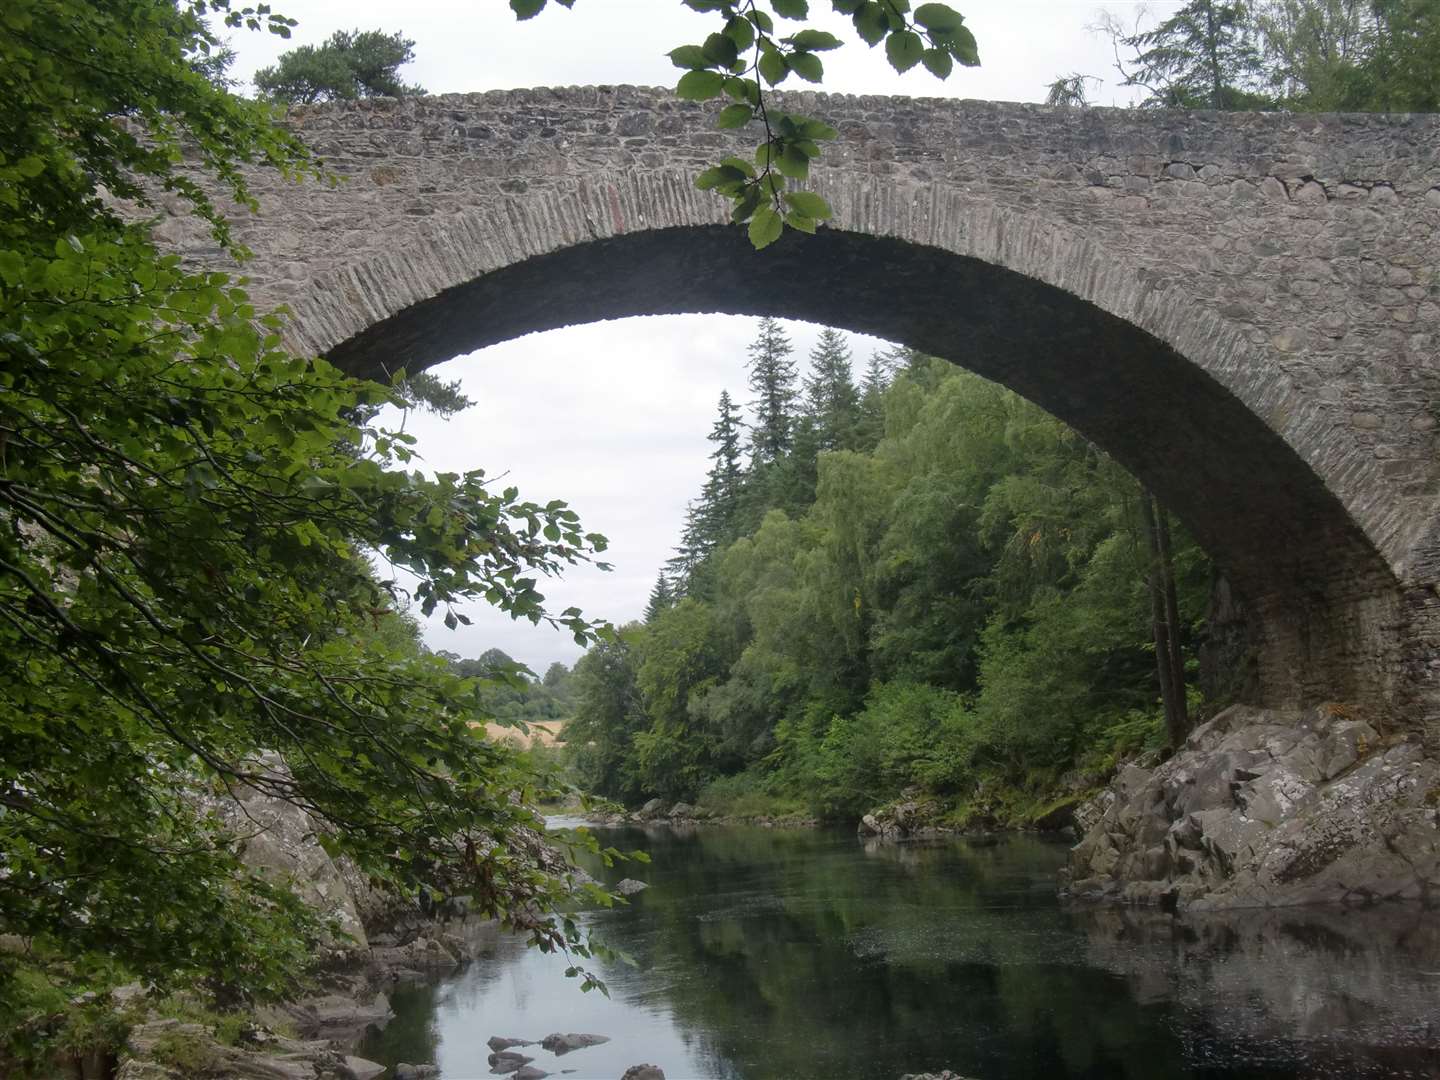 Dultulich Bridge, spanning the Findhorn.